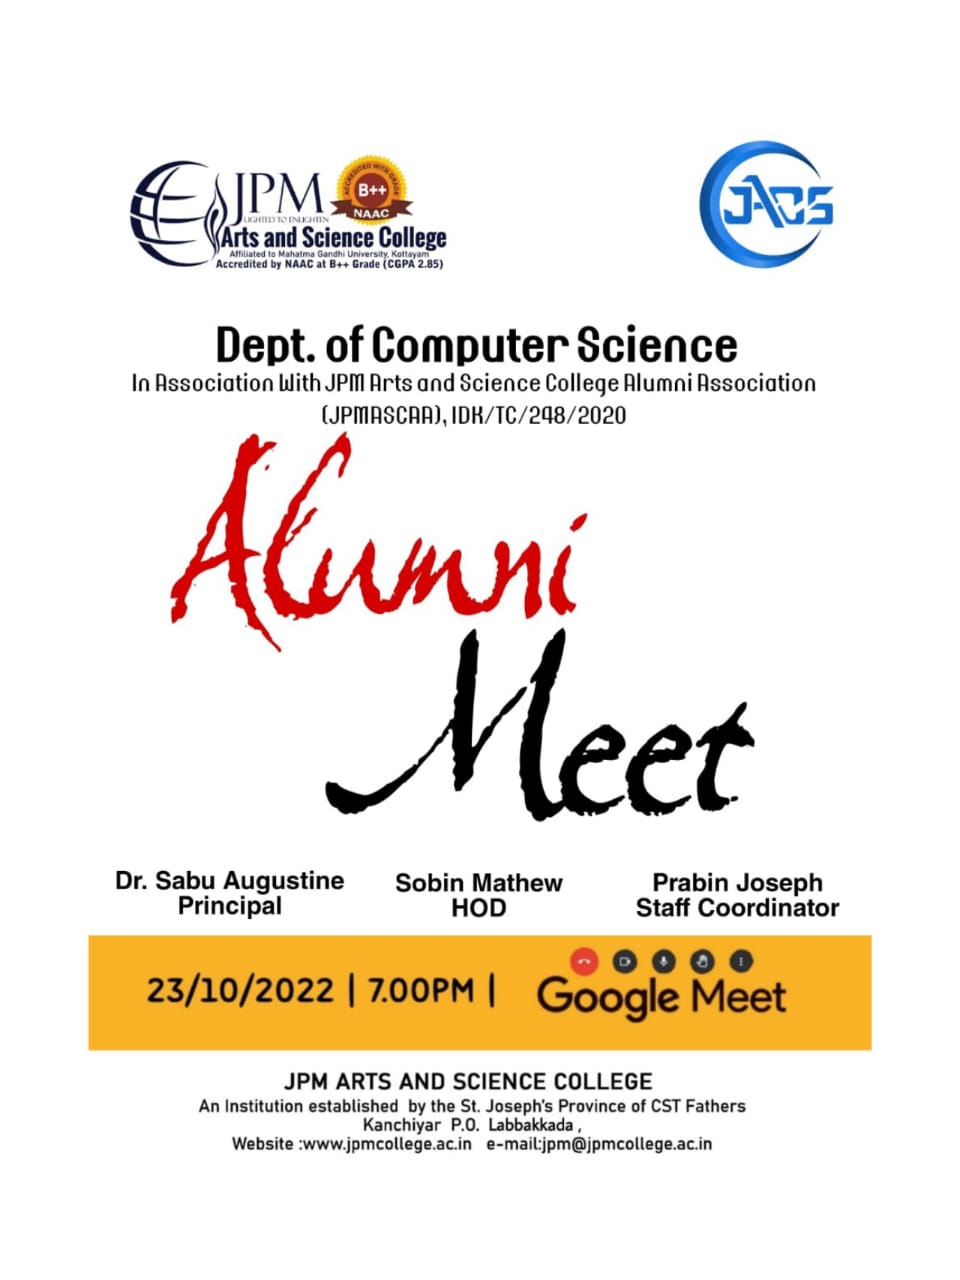 Alumni Meet